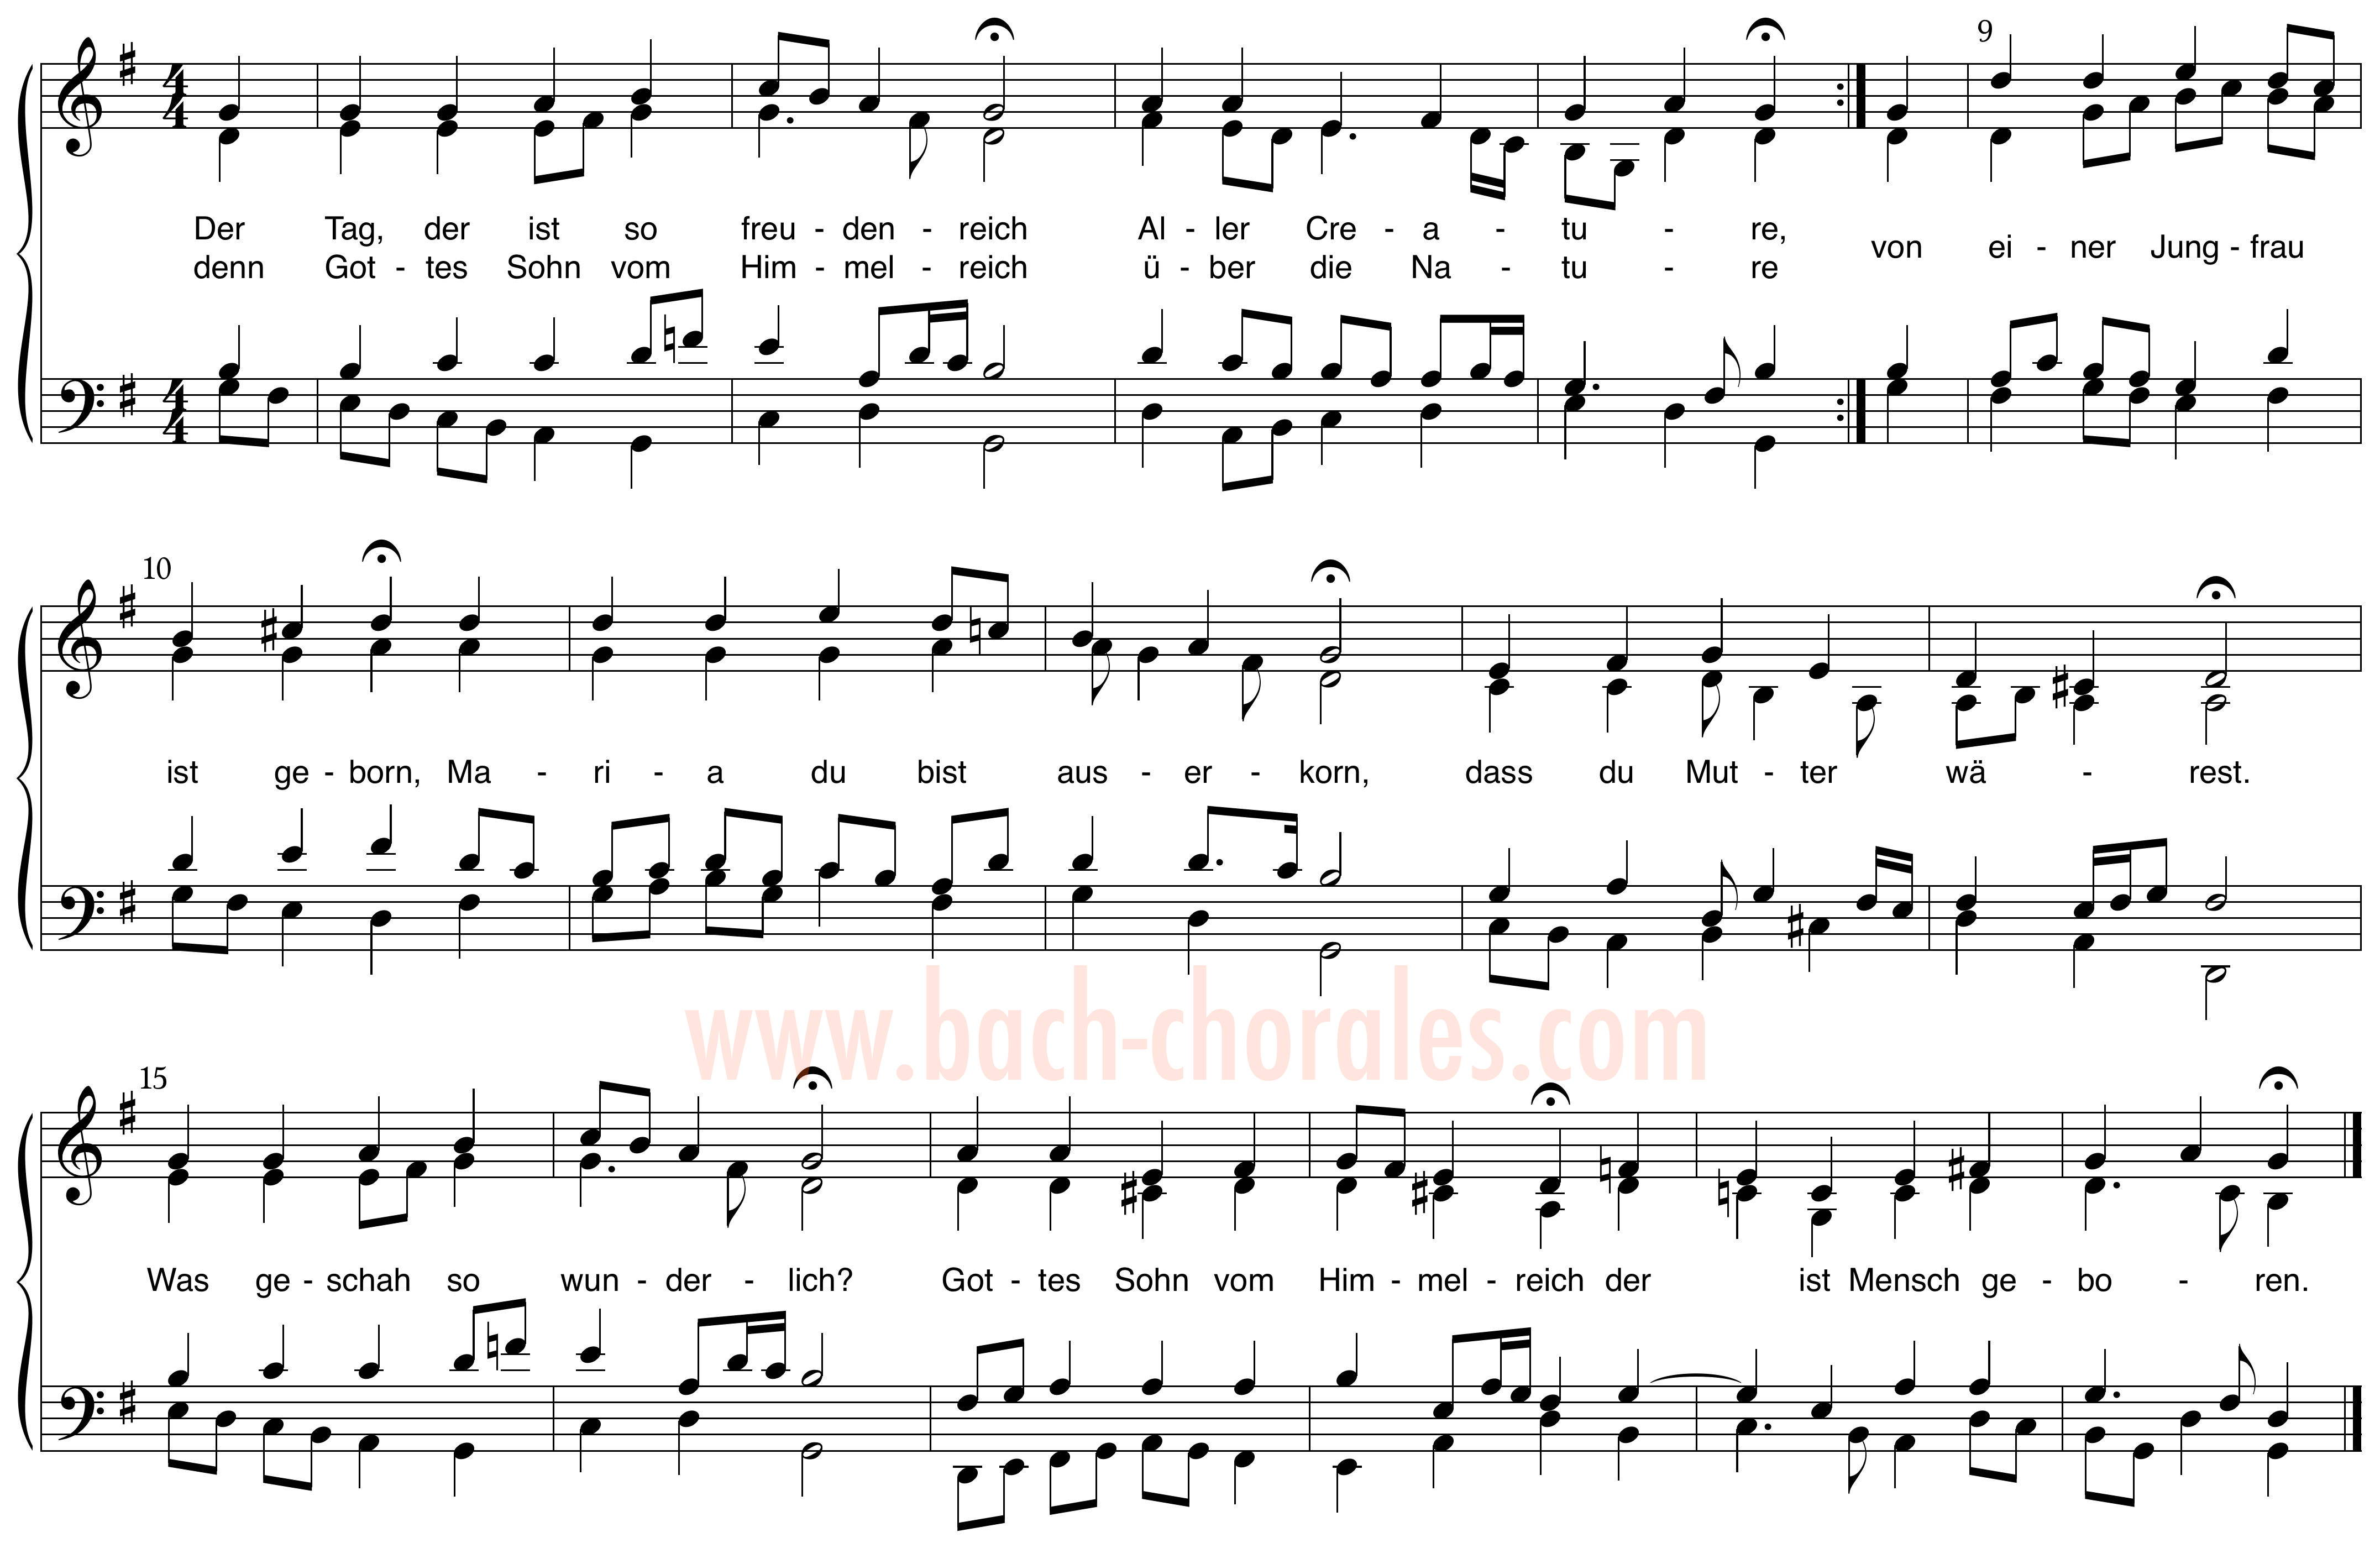 notenbeeld BWV 294 op https://www.bach-chorales.com/